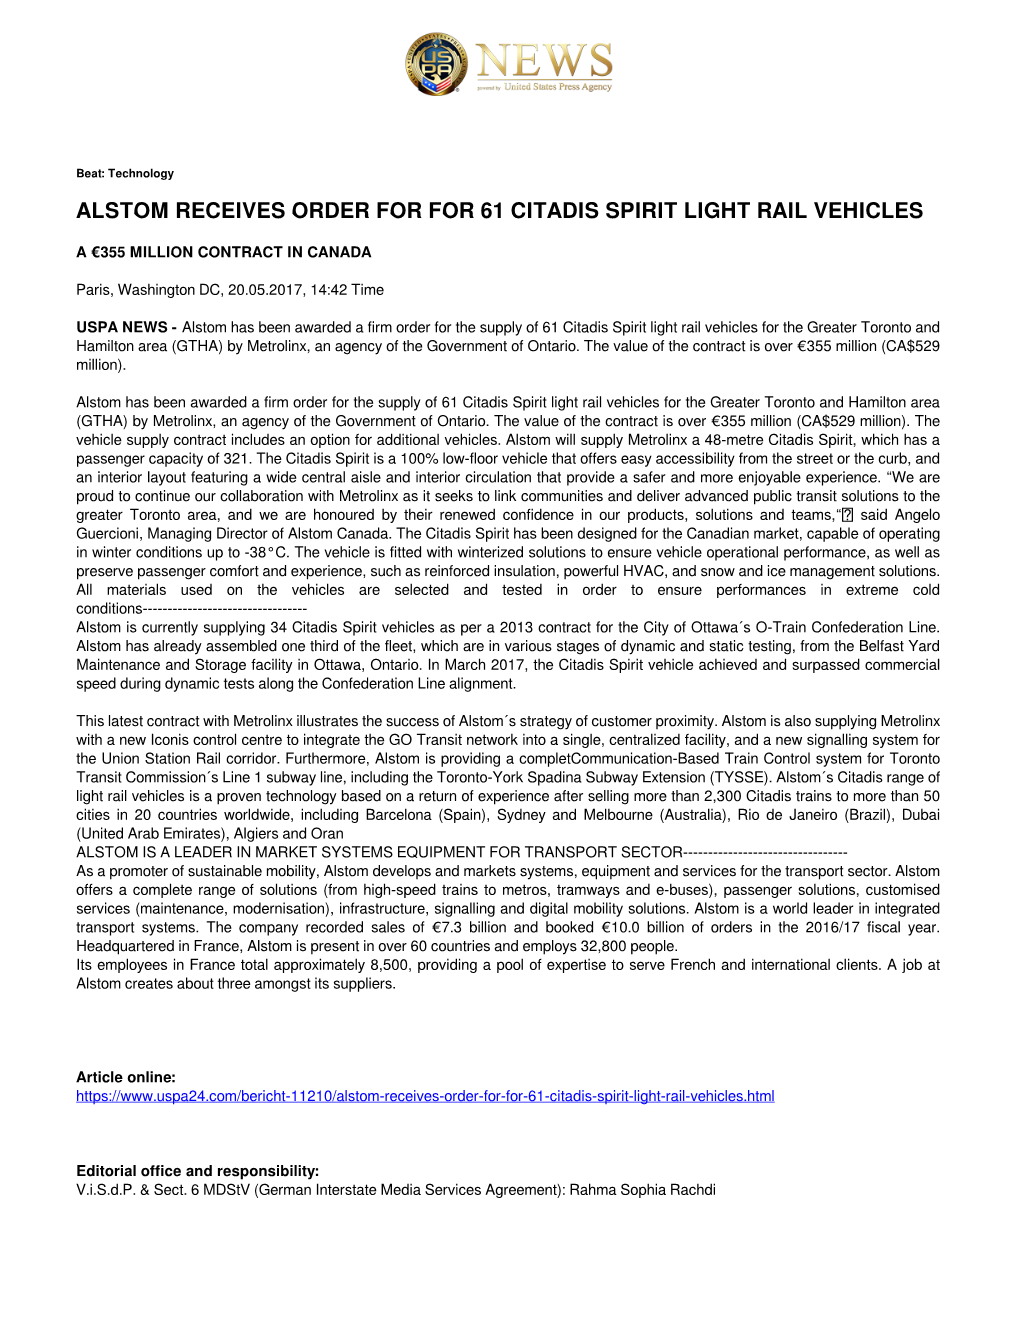 Alstom Receives Order for for 61 Citadis Spirit Light Rail Vehicles